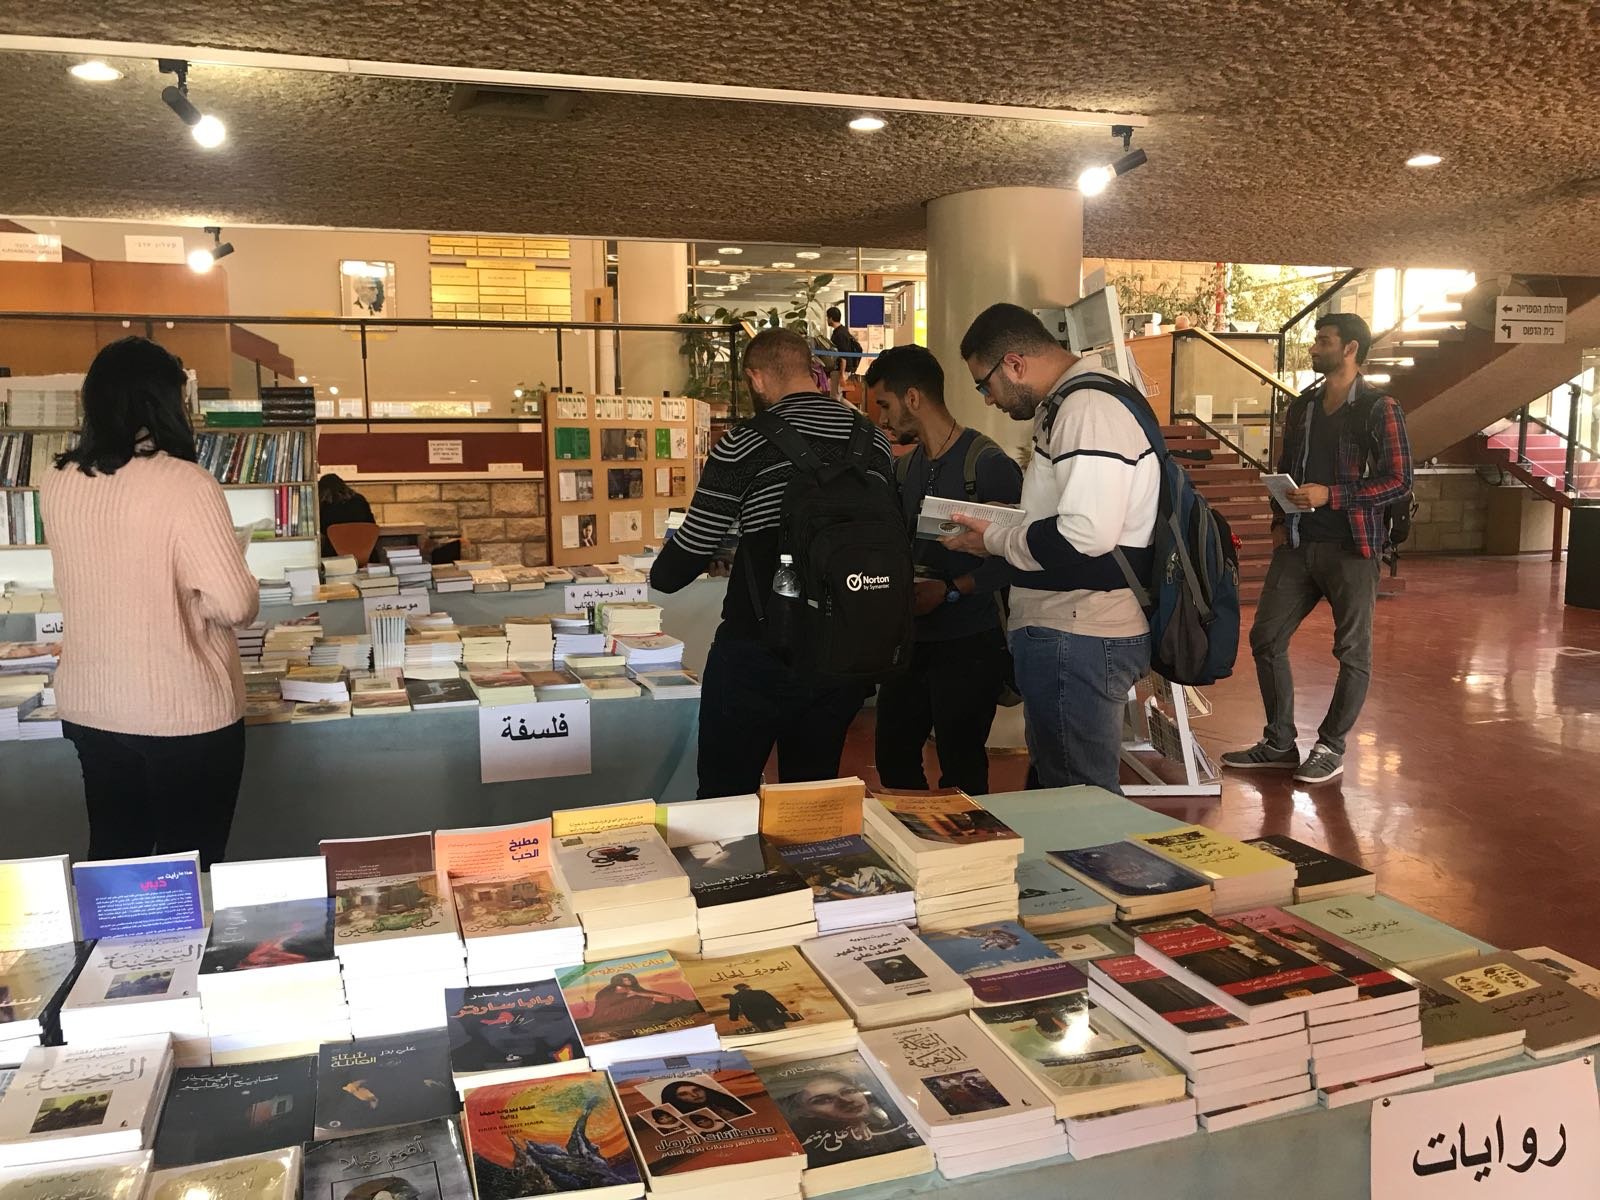 افتتاح اضخم معرض للكتاب في جامعة تل ابيب, مستمر حتى الخميس 11.1.18 .-8